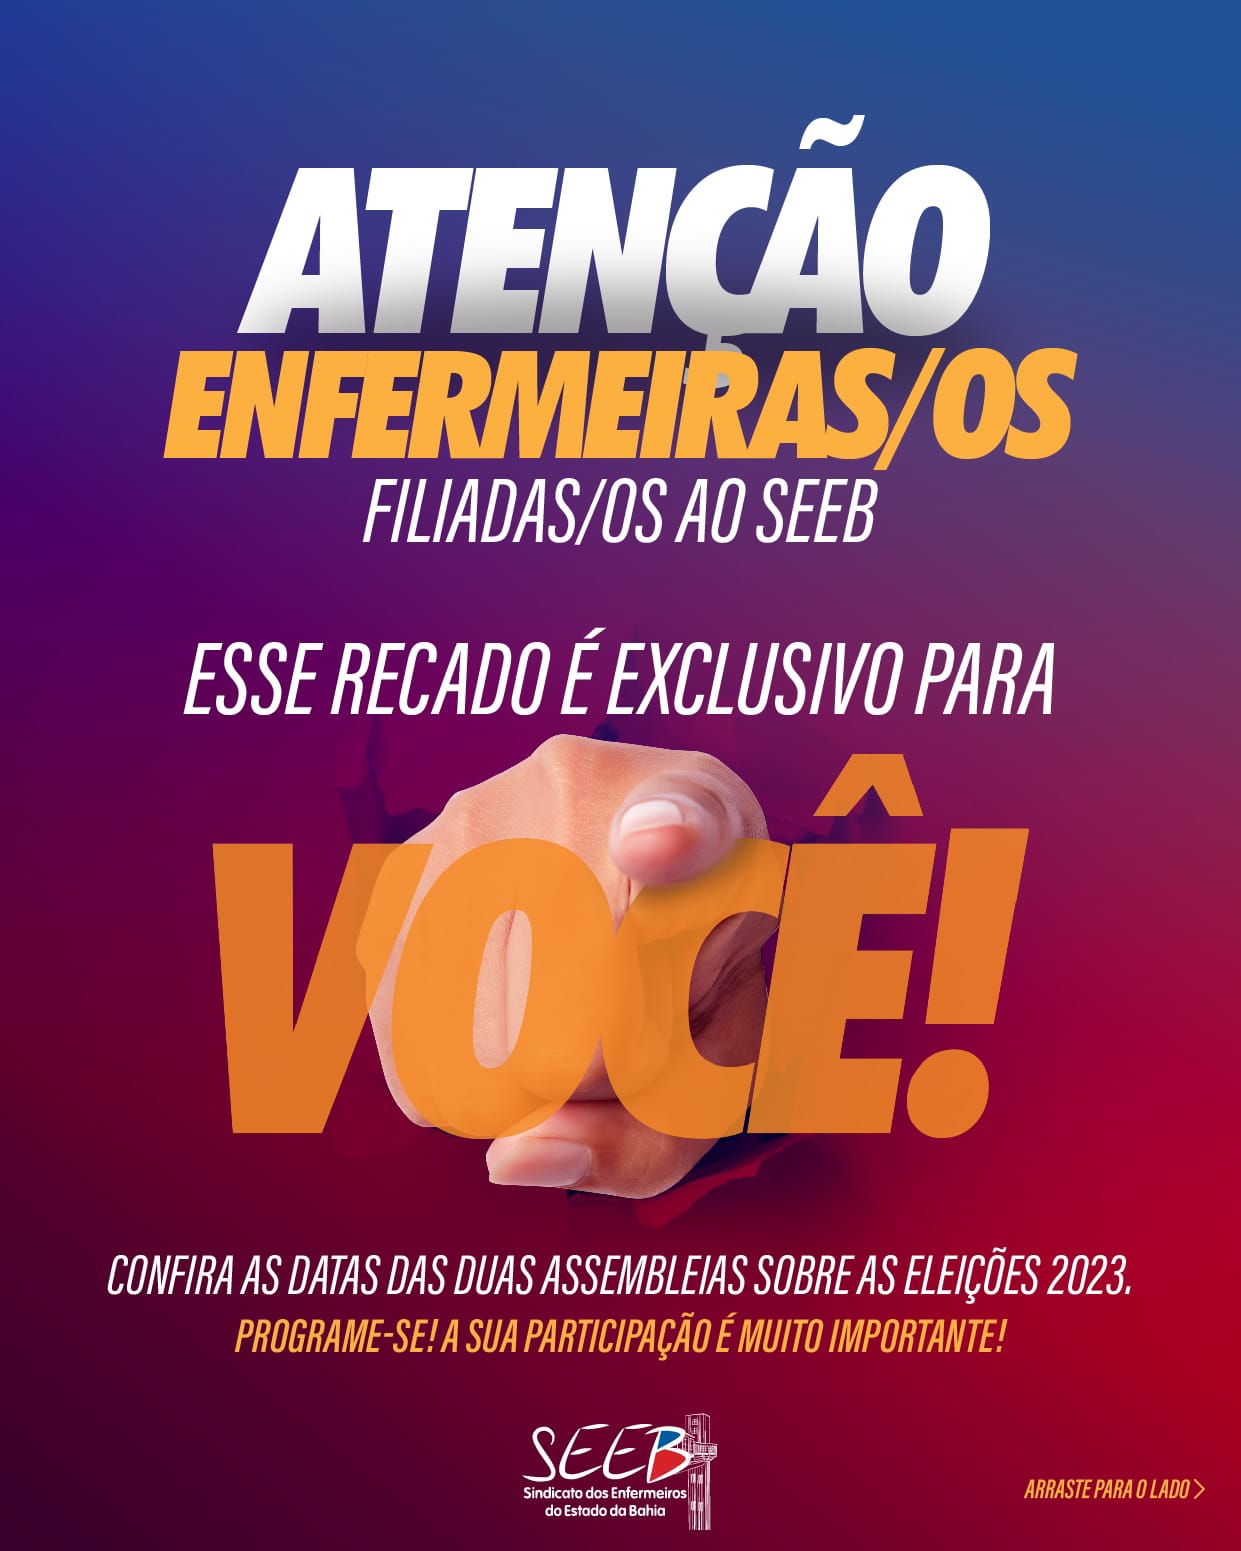 ATENÇÃO ENFERMEIRAS/OS FILIADAS/OS AO SEEB